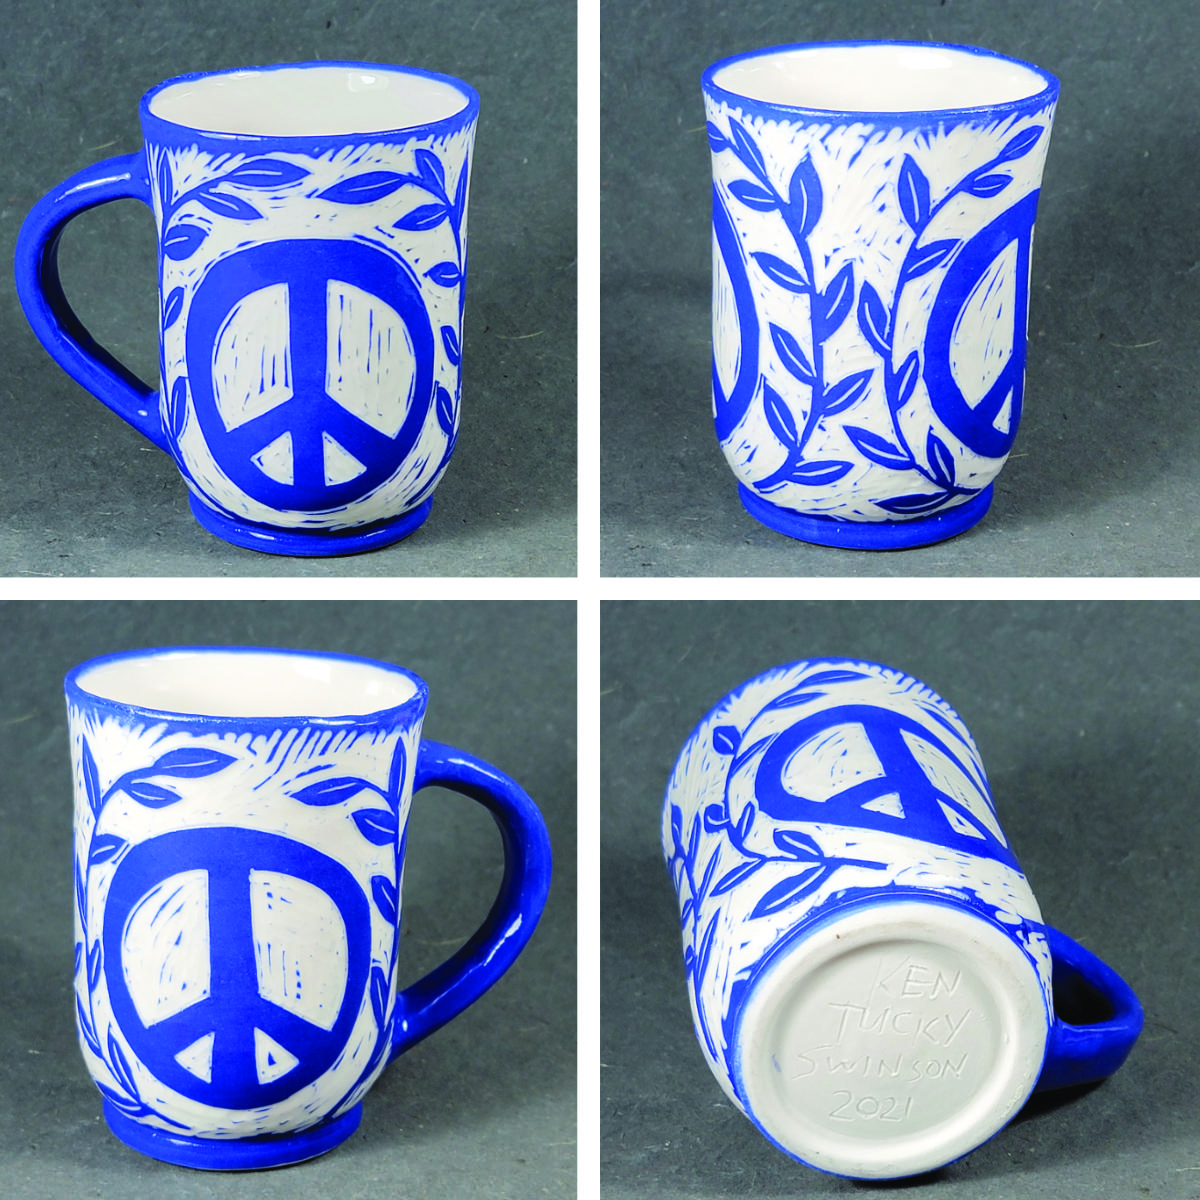 folk art style porcelain mug with peace symbol